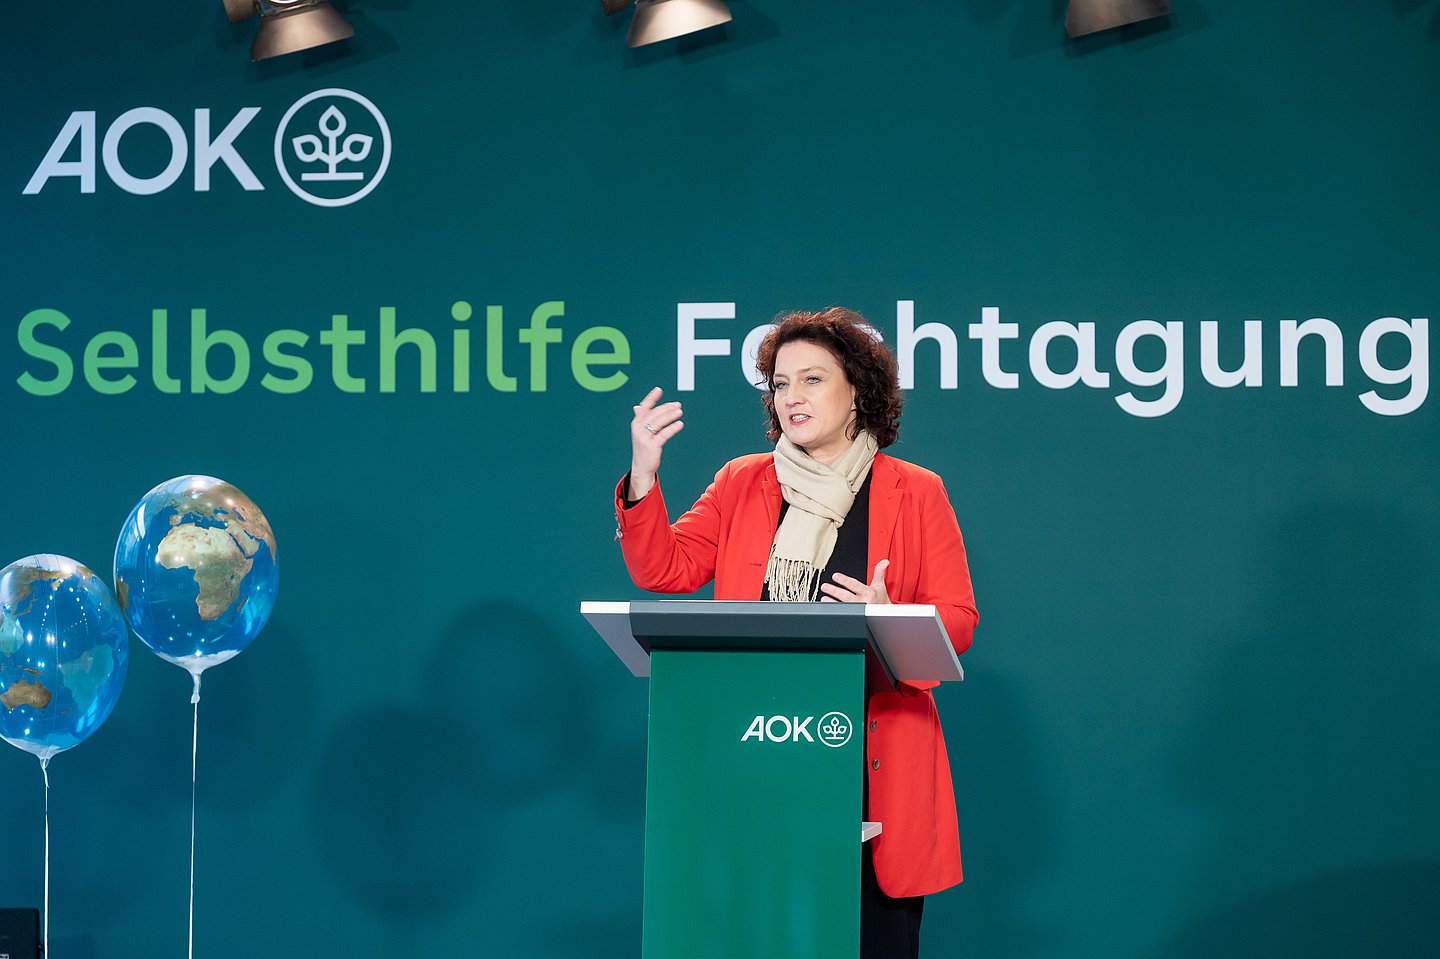 Dr. Carola Reimann steht vor einer grünen Stellwand mit der Aufschrift "Selbsthilfe-Fachtagung" hinter einem Stehpult und hält eine Rede.